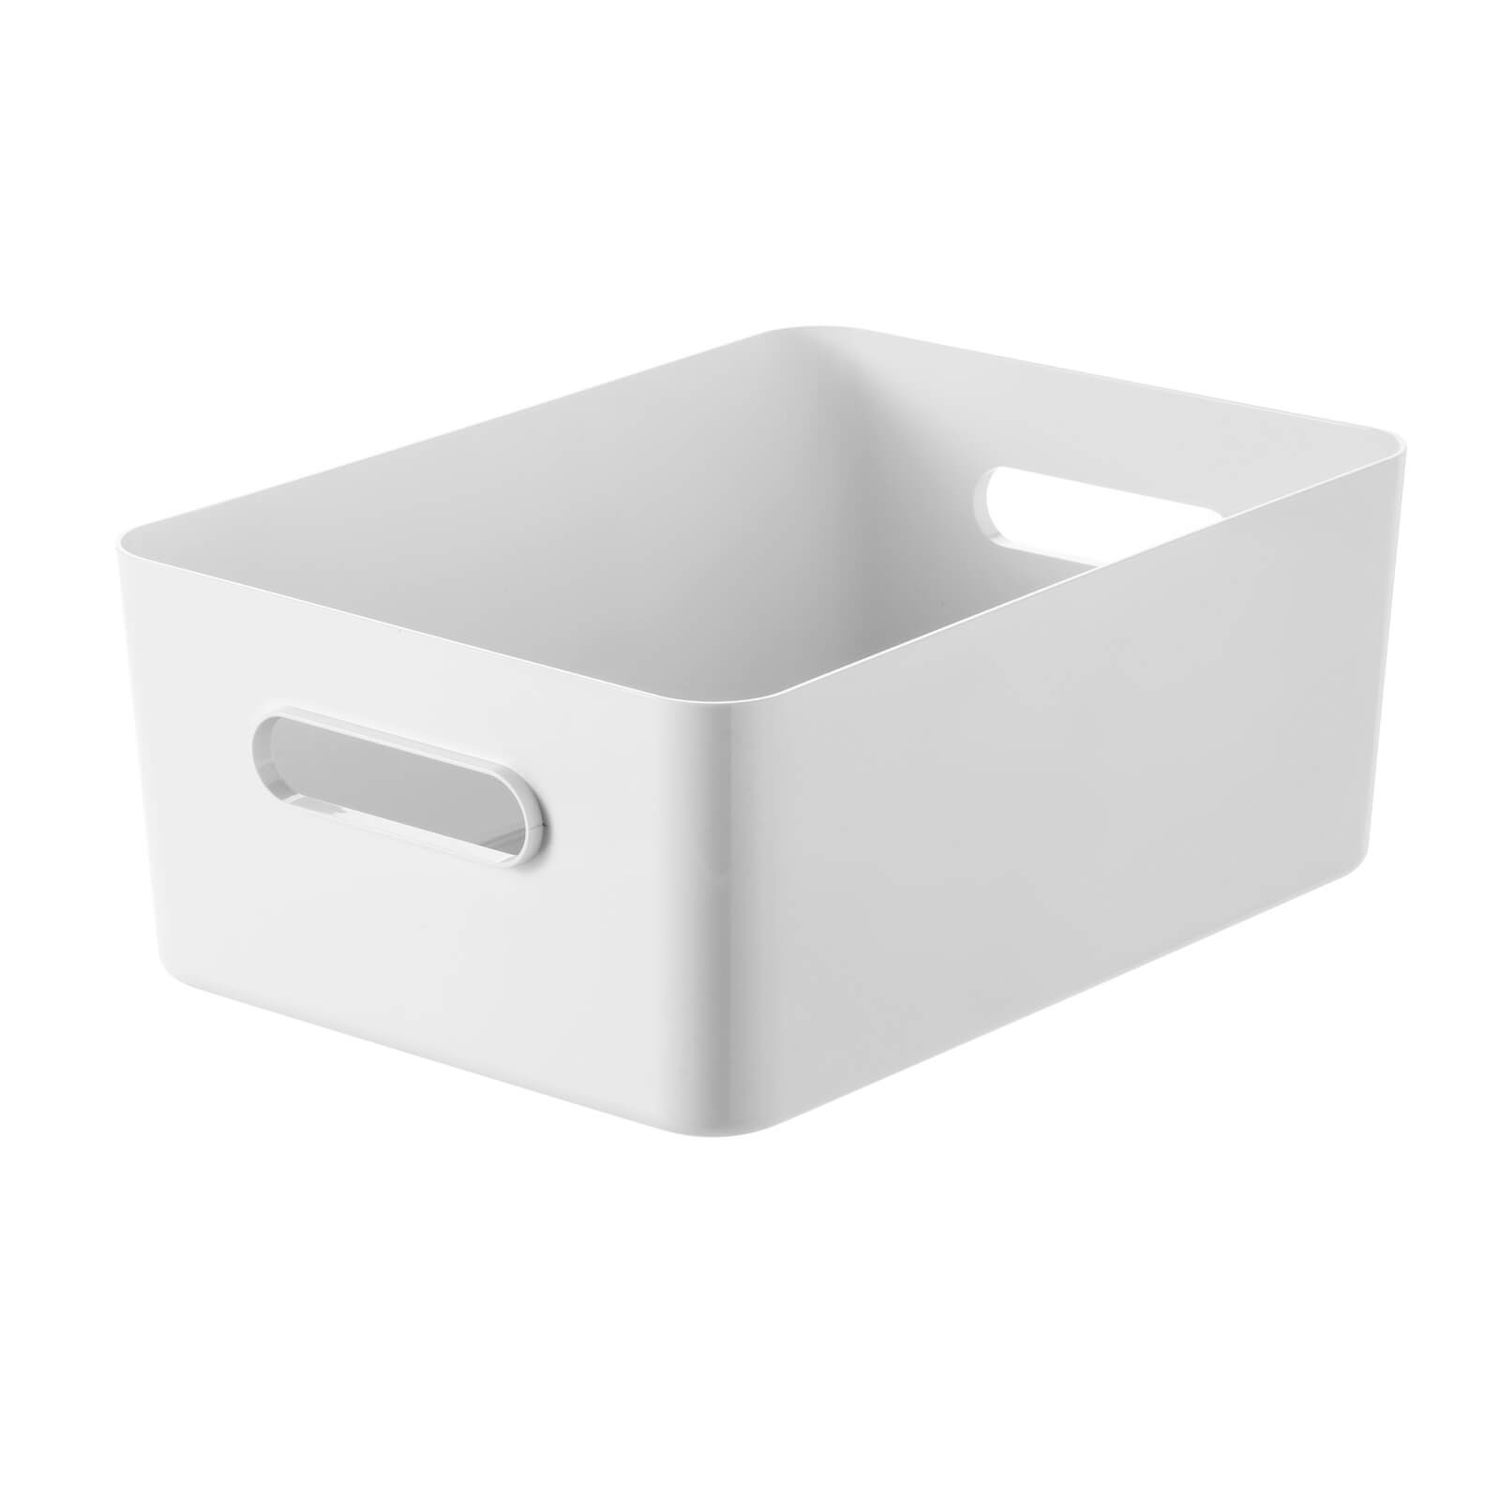 SmartStore Compact L box white